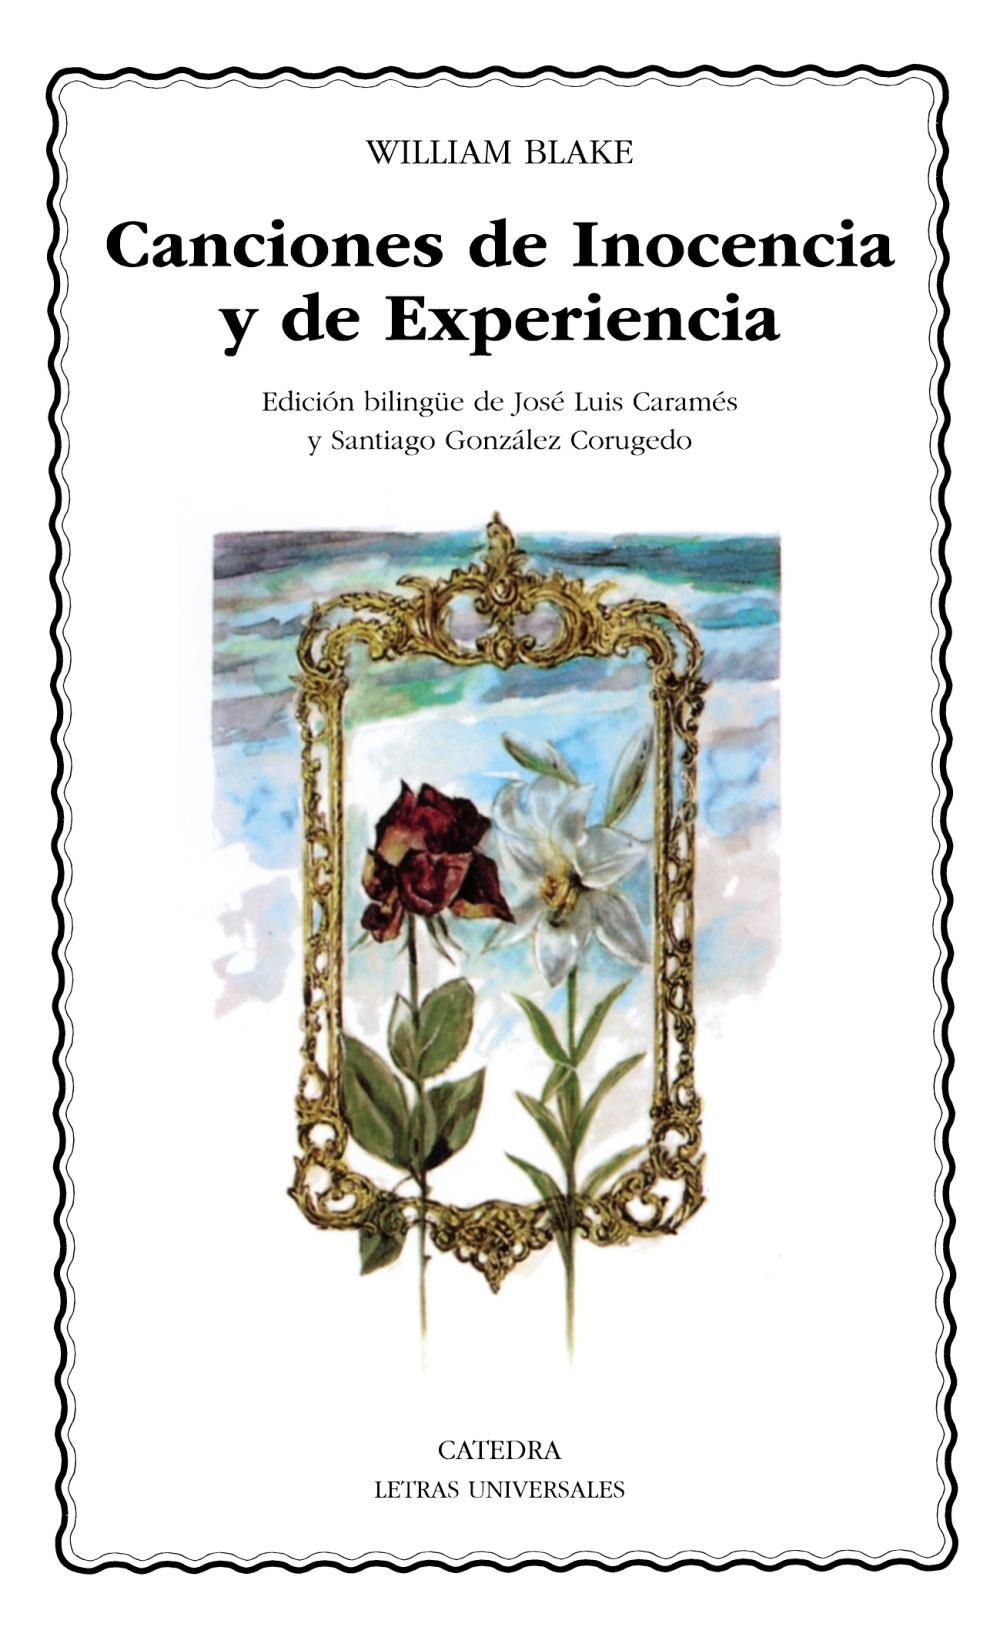 Canciones de Inocencia y de Experiencia "(Edición bilingüe)"